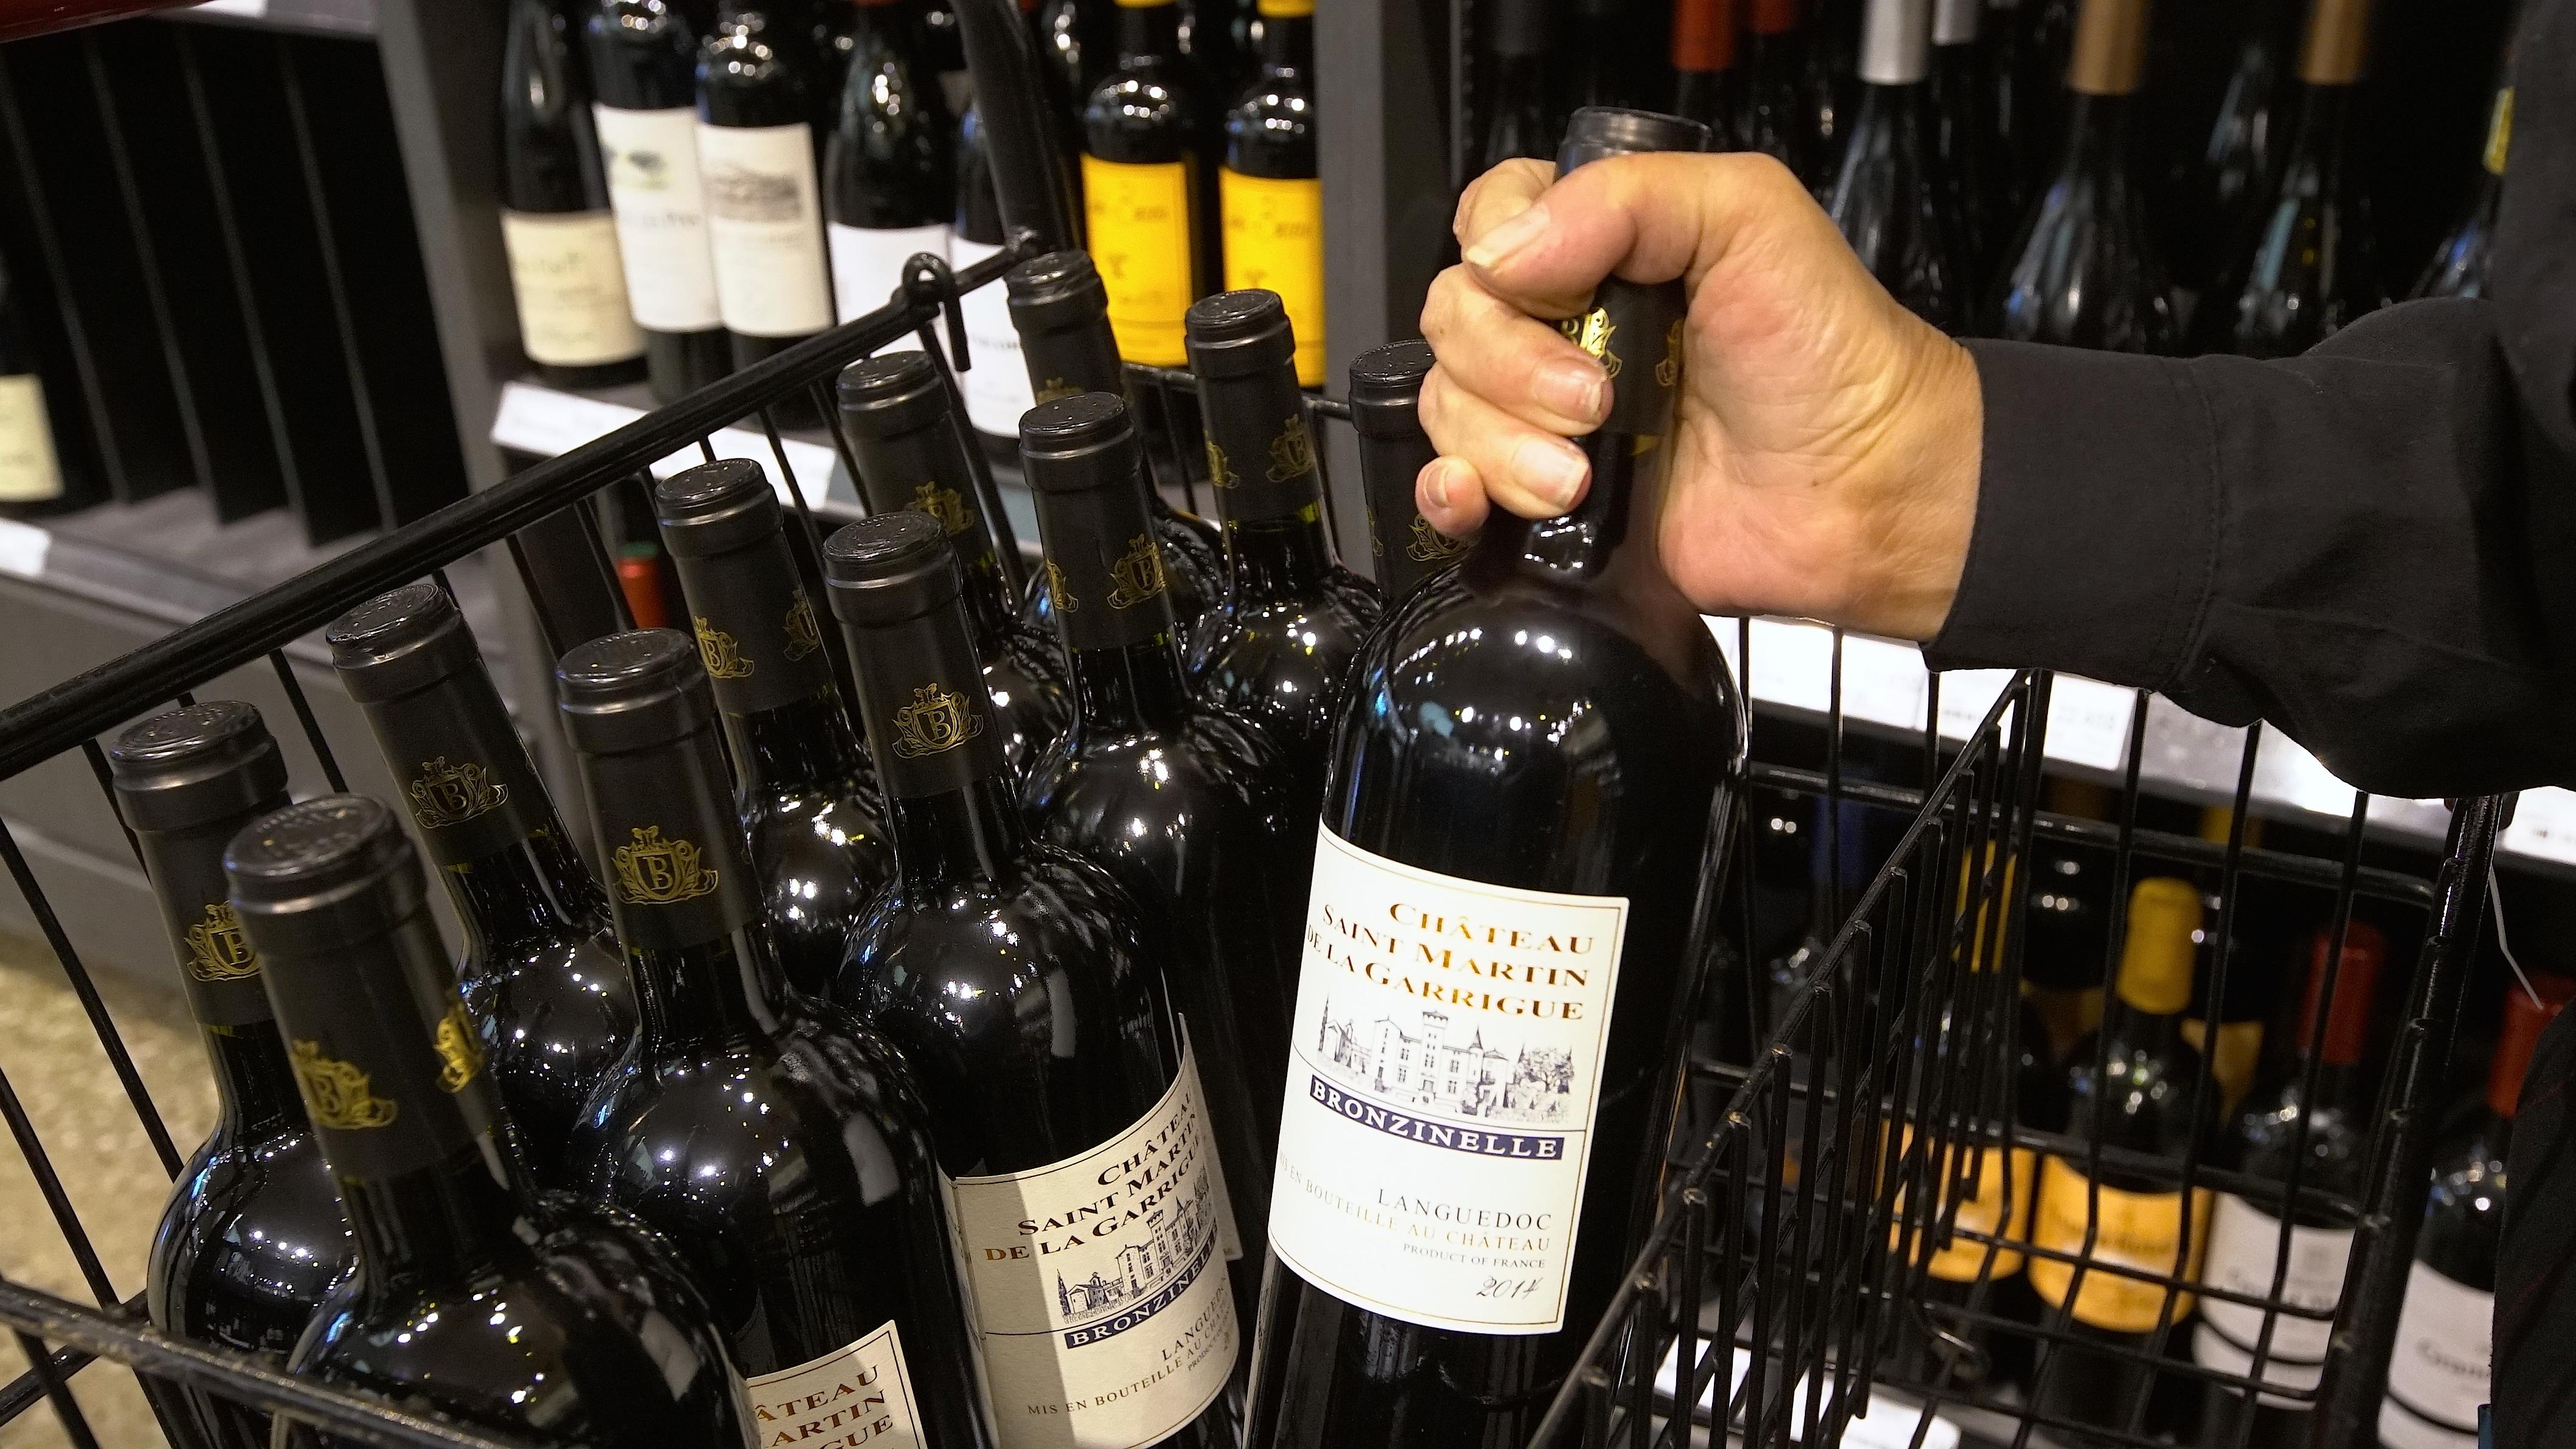 Le prix du vin n'échappe pas à la tendance haussière  :  Frédéric Laurin
Le prix du vin n'échappe pas à la tendance haussière  :  Frédéric Laurin